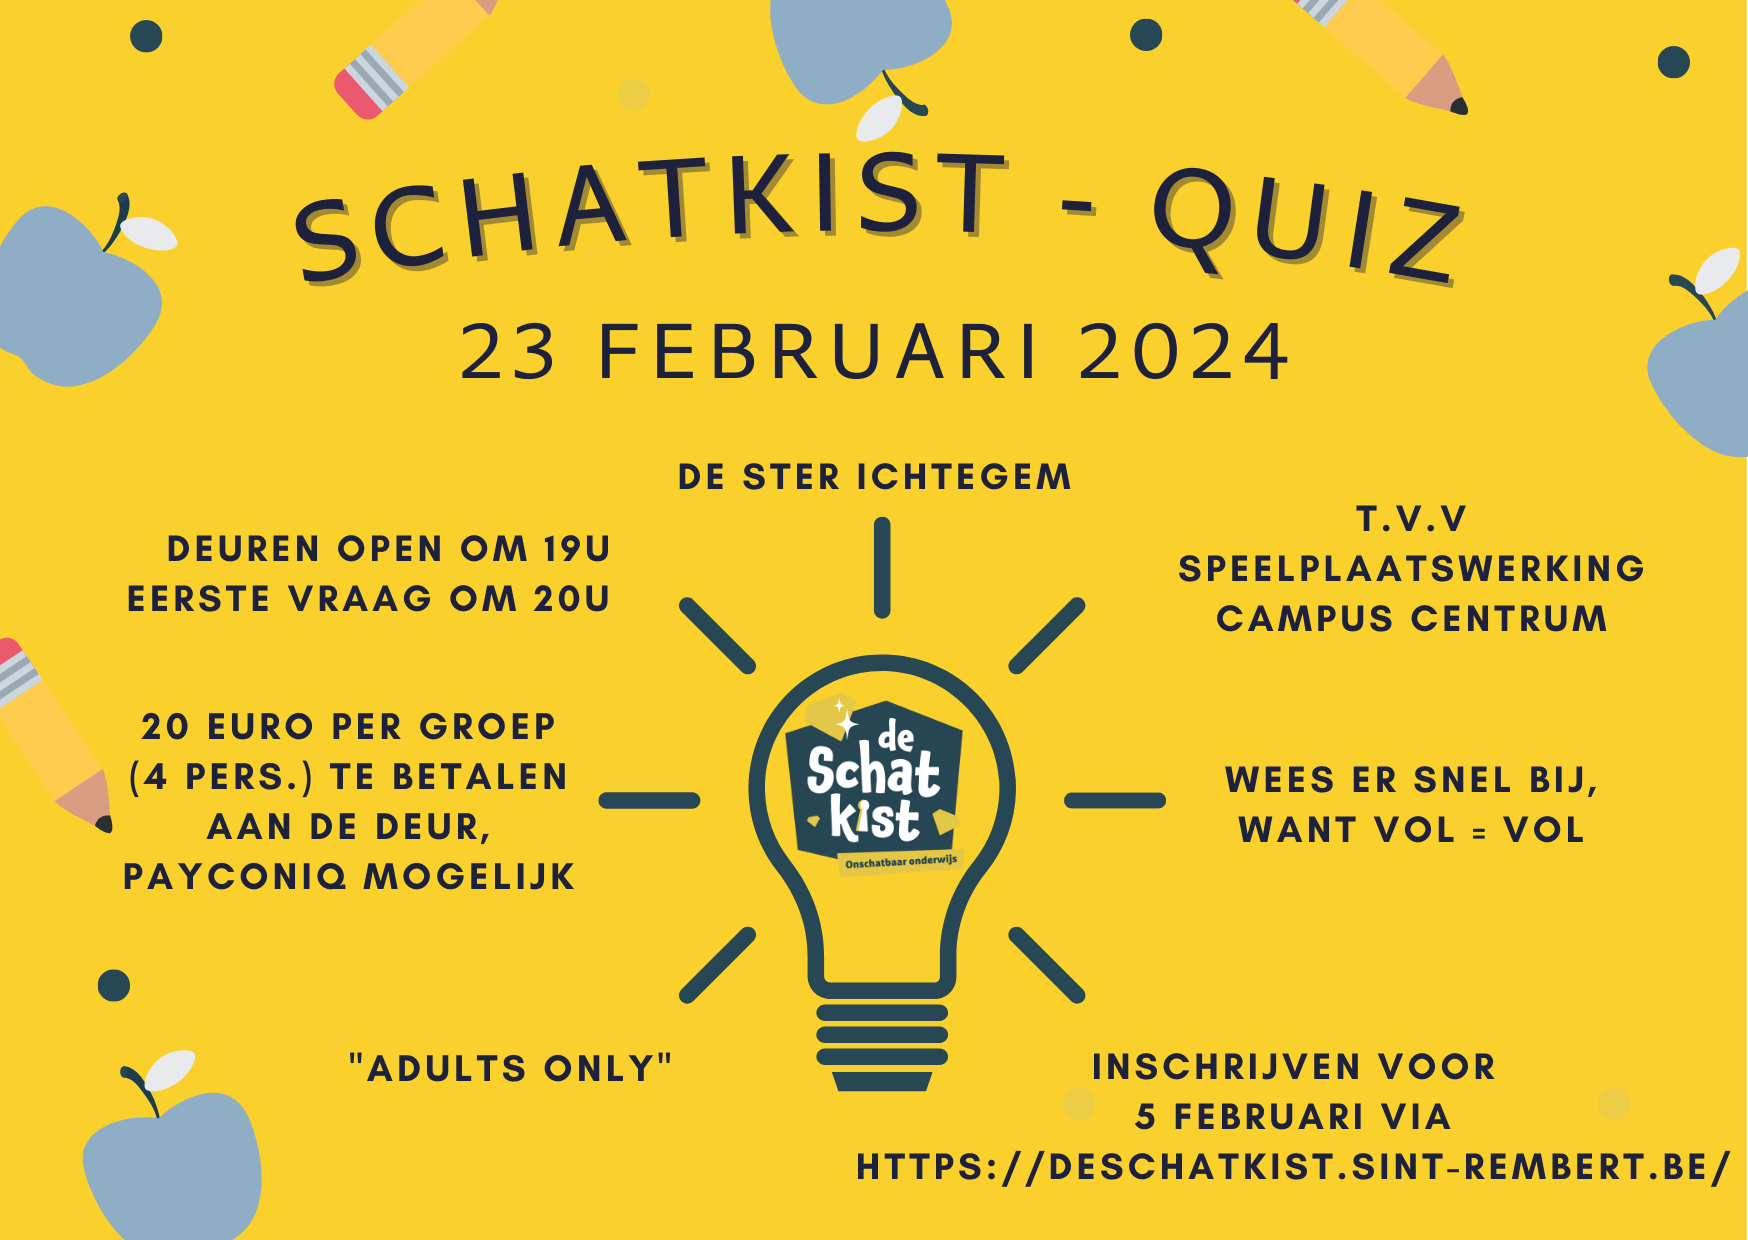 Schatkist - Quiz